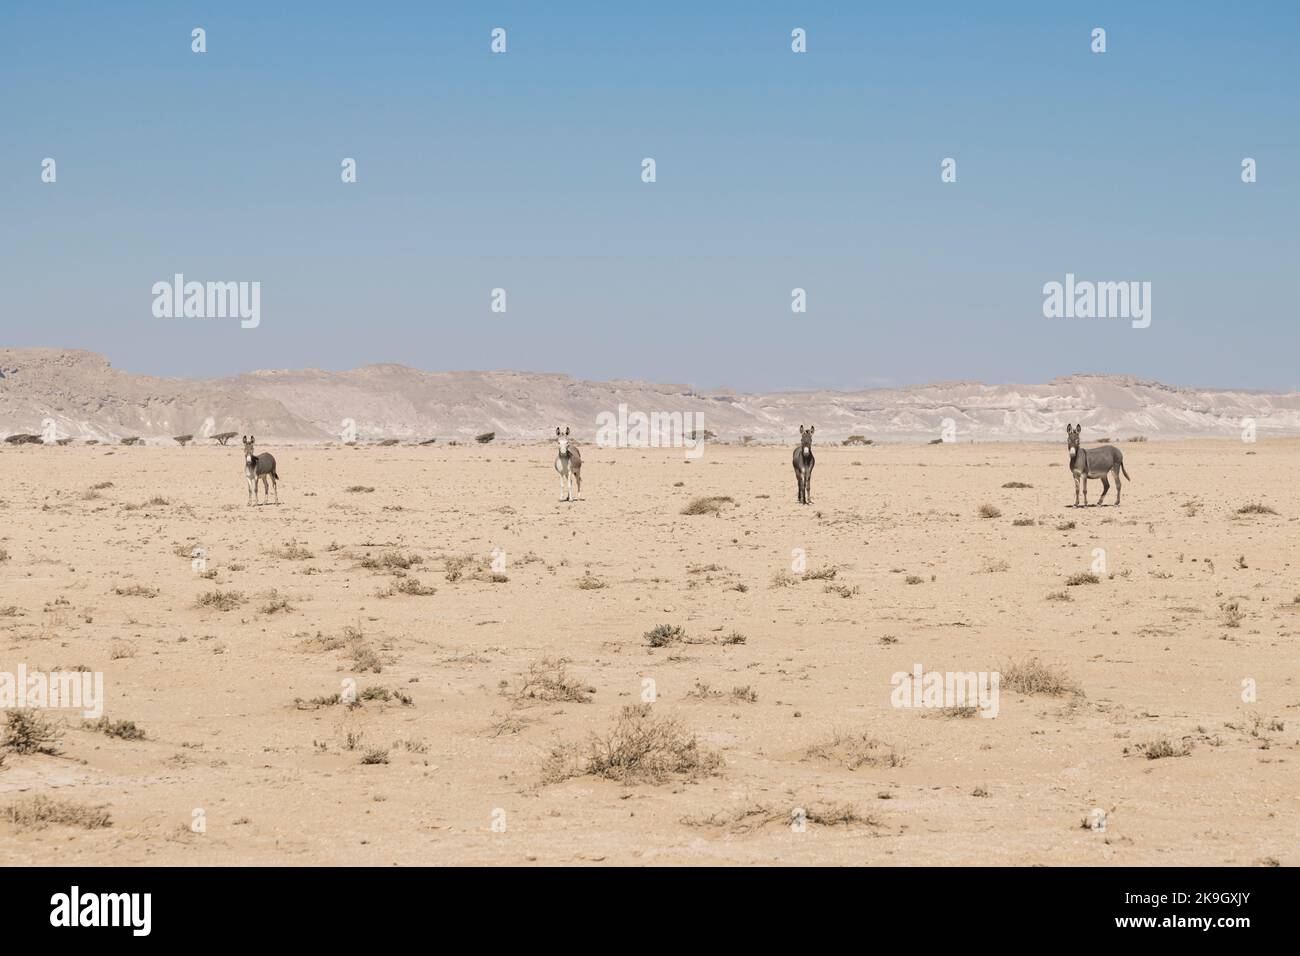 4 asini selvatici guardando la macchina fotografica, deserto del Sultanato di Oman, una destinazione di viaggio Foto Stock